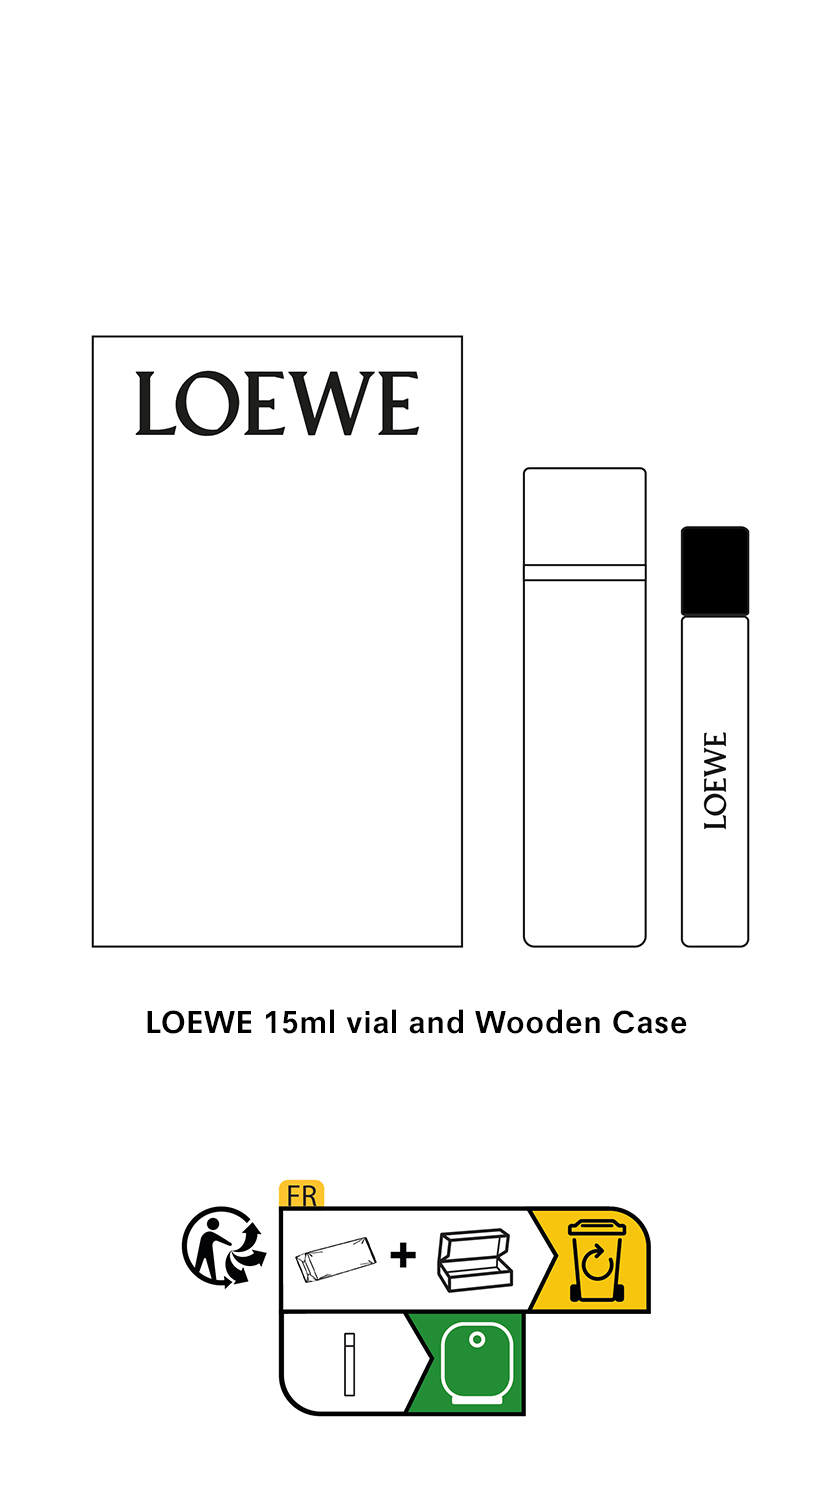 Perfumes LOEWE - Candles